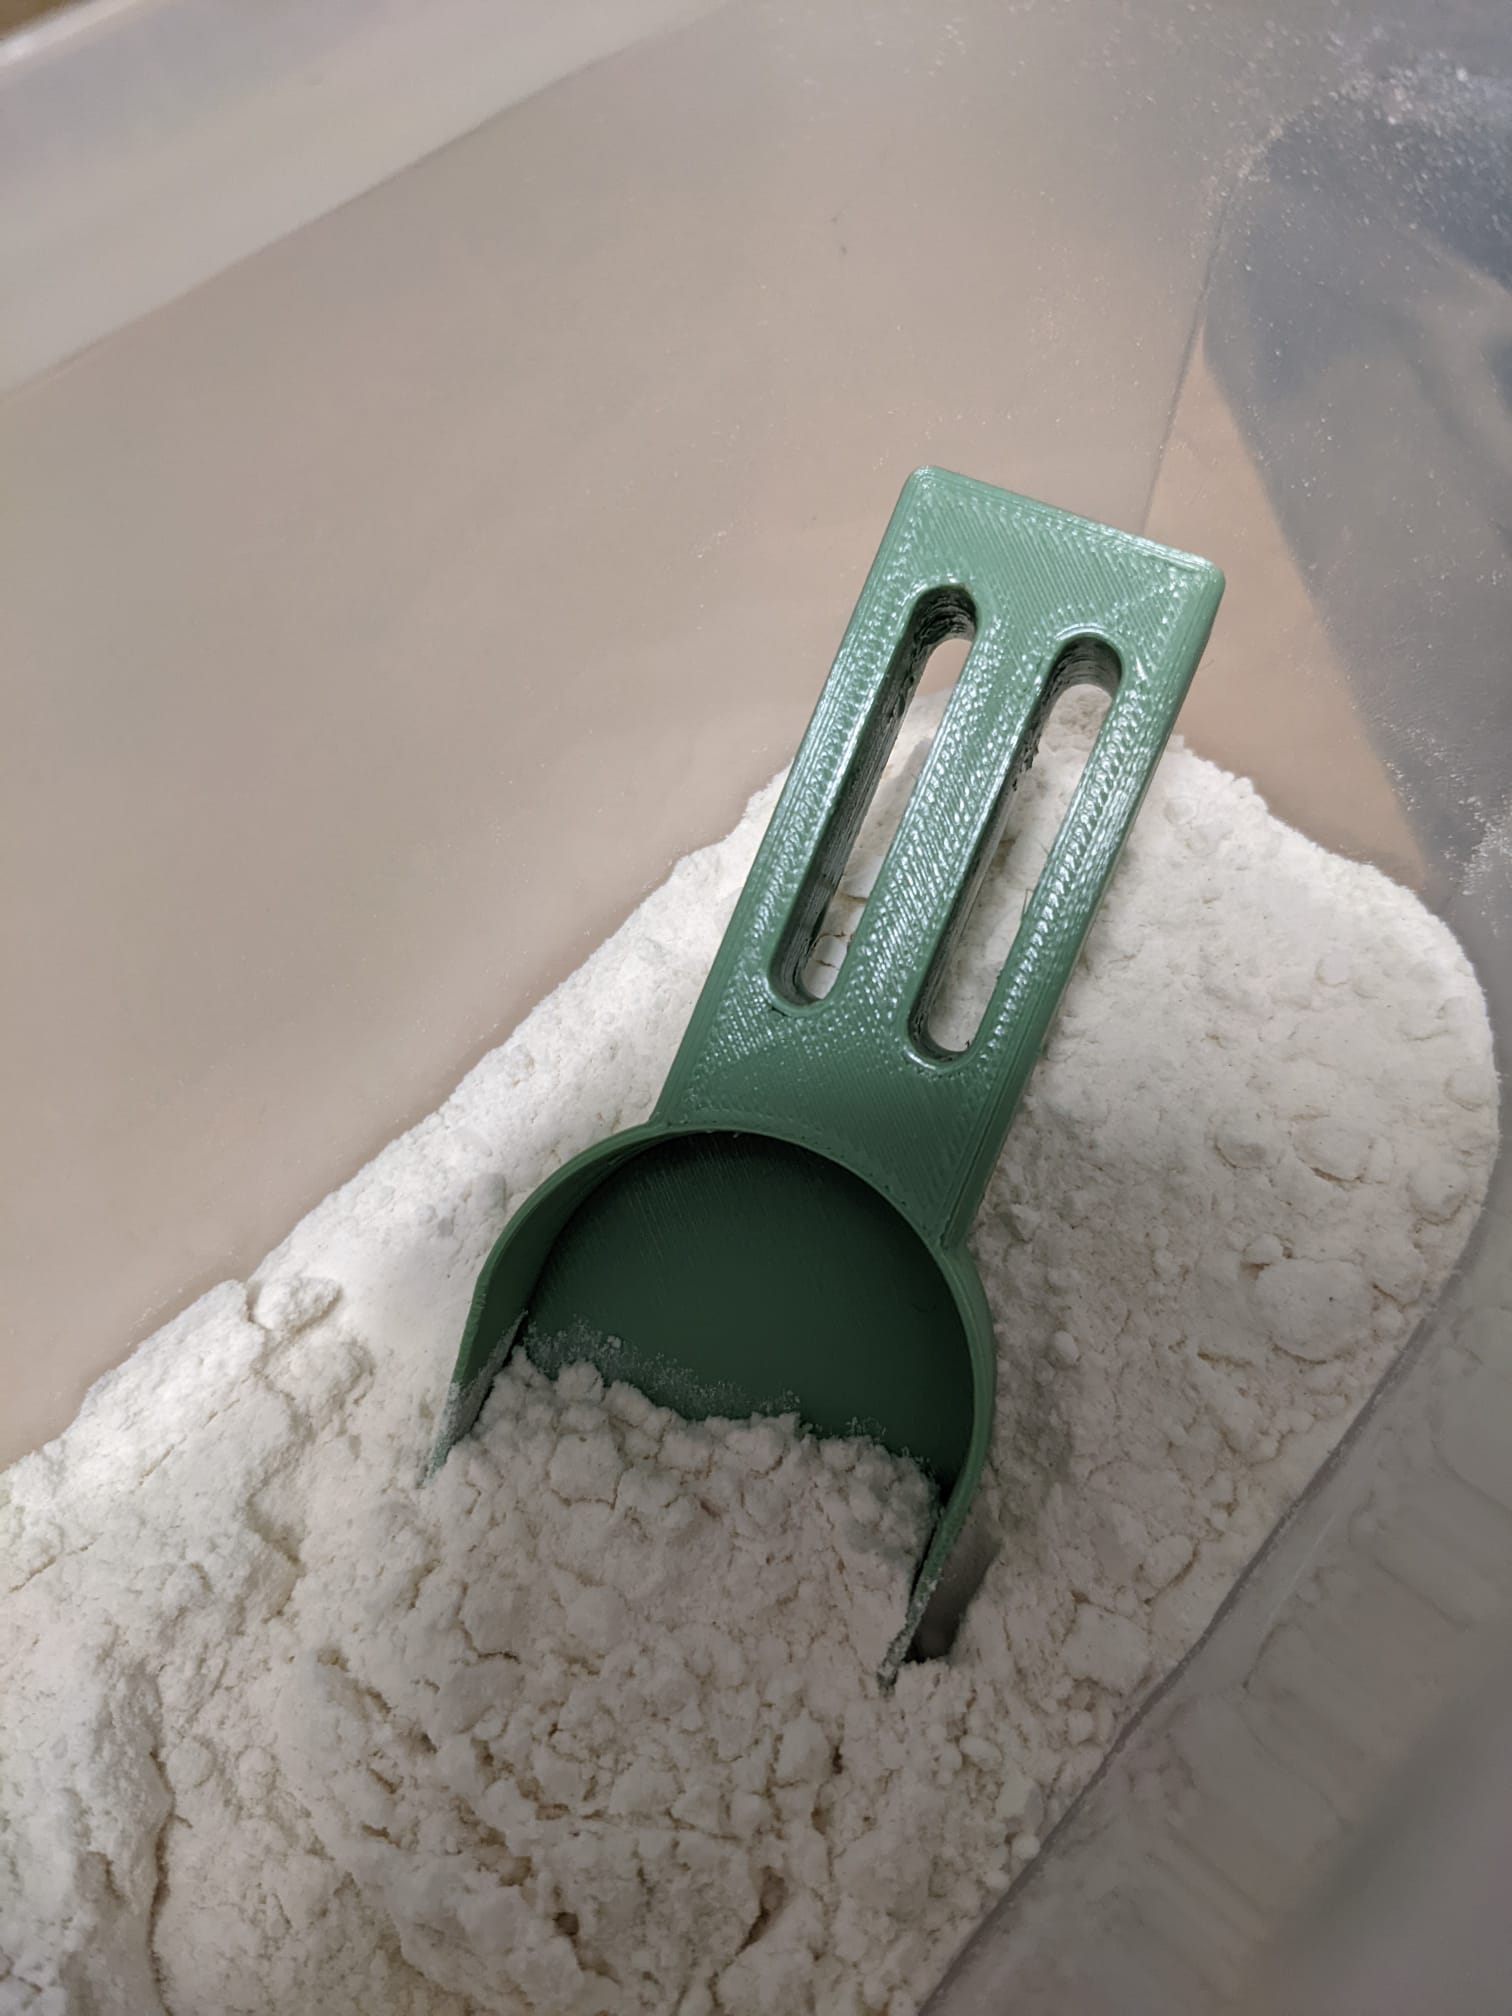 Flour shovel